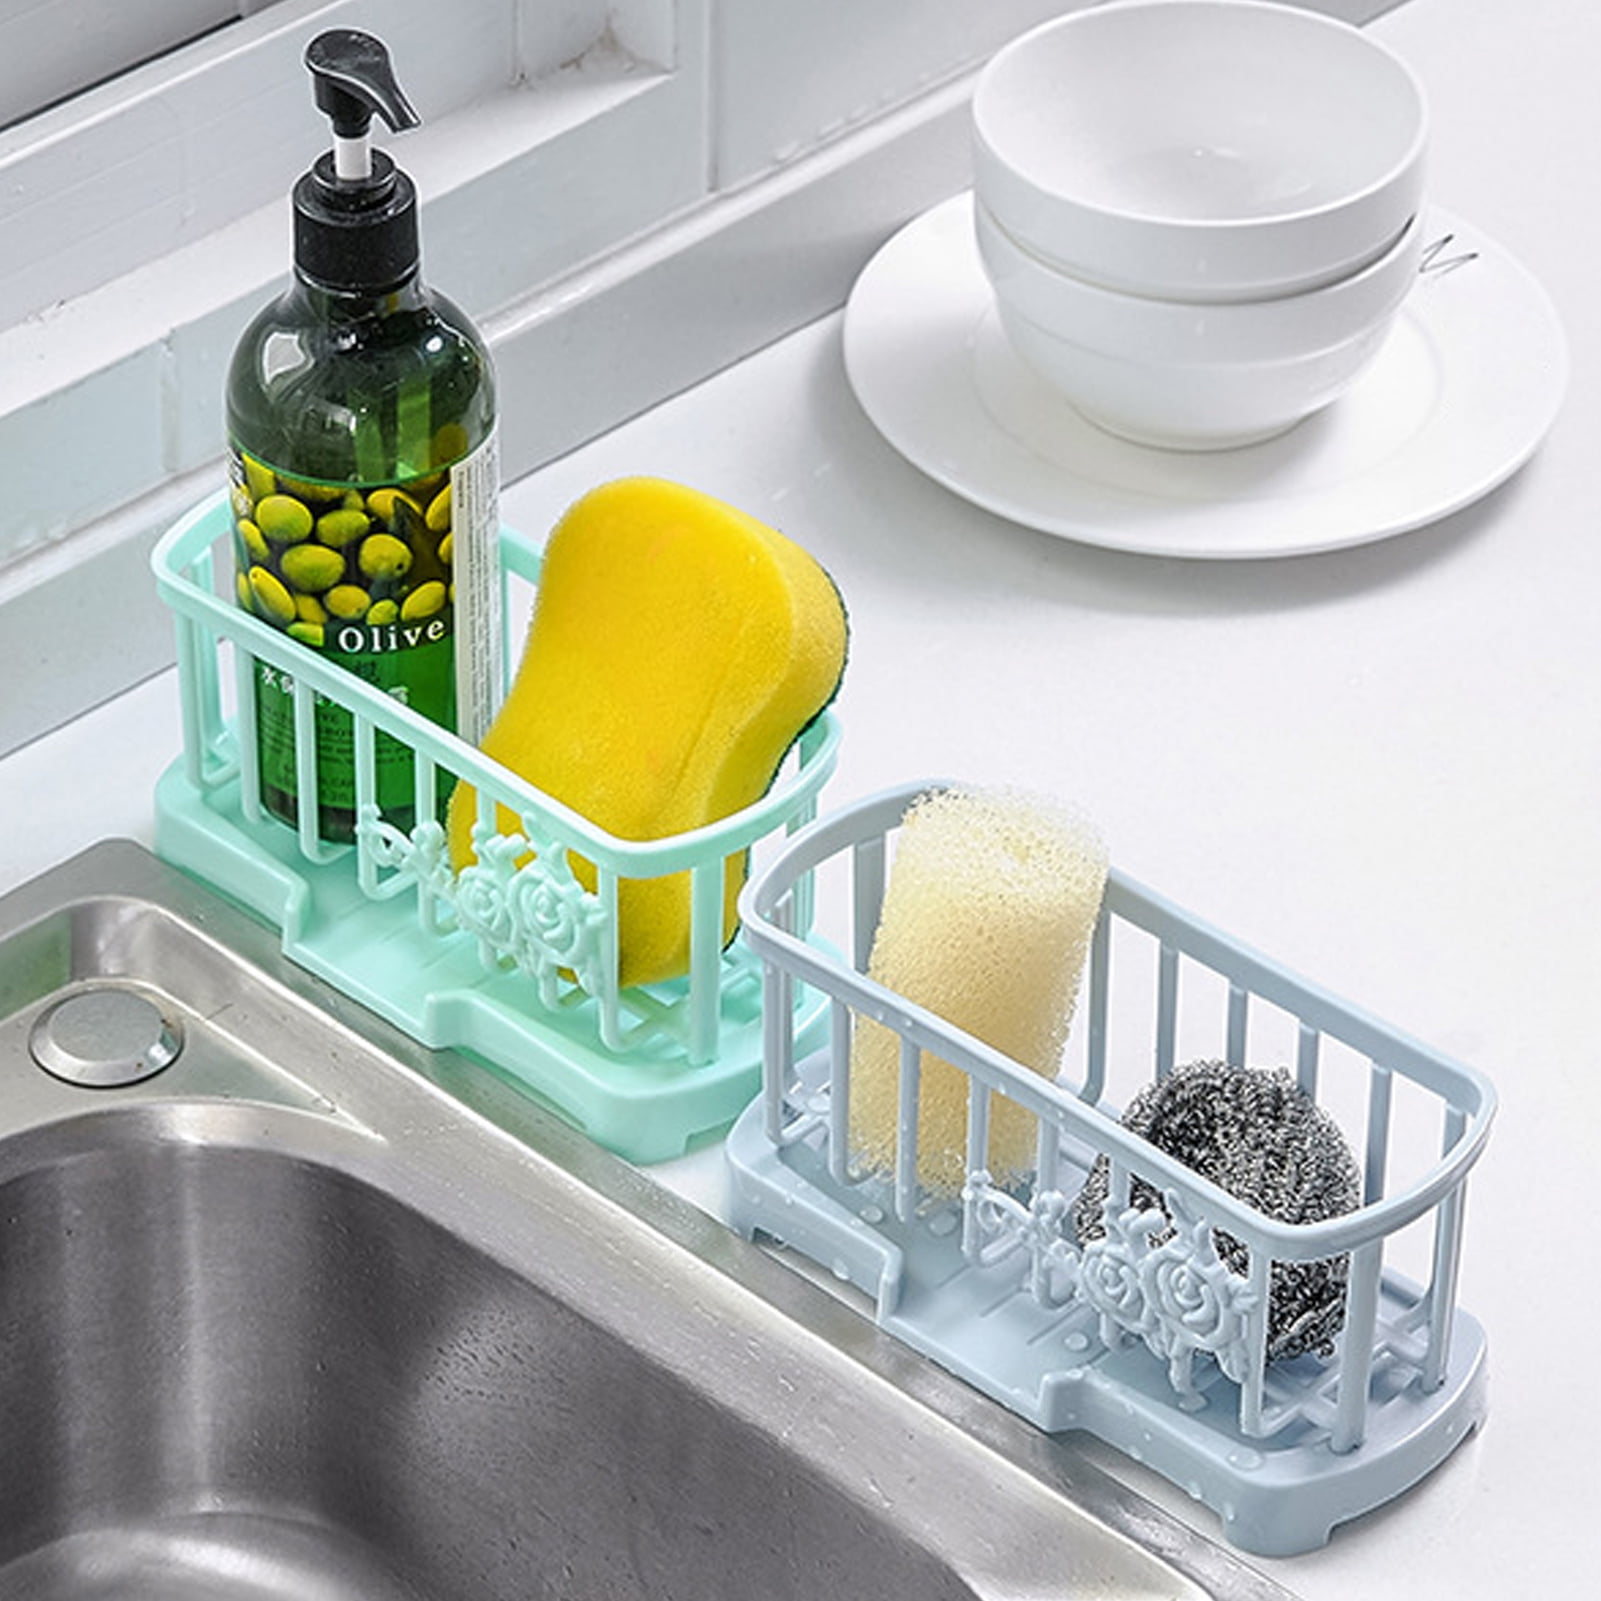 Sponge Holder for Kitchen Sink  Sponge holder, Shower shelves, Sponge caddy